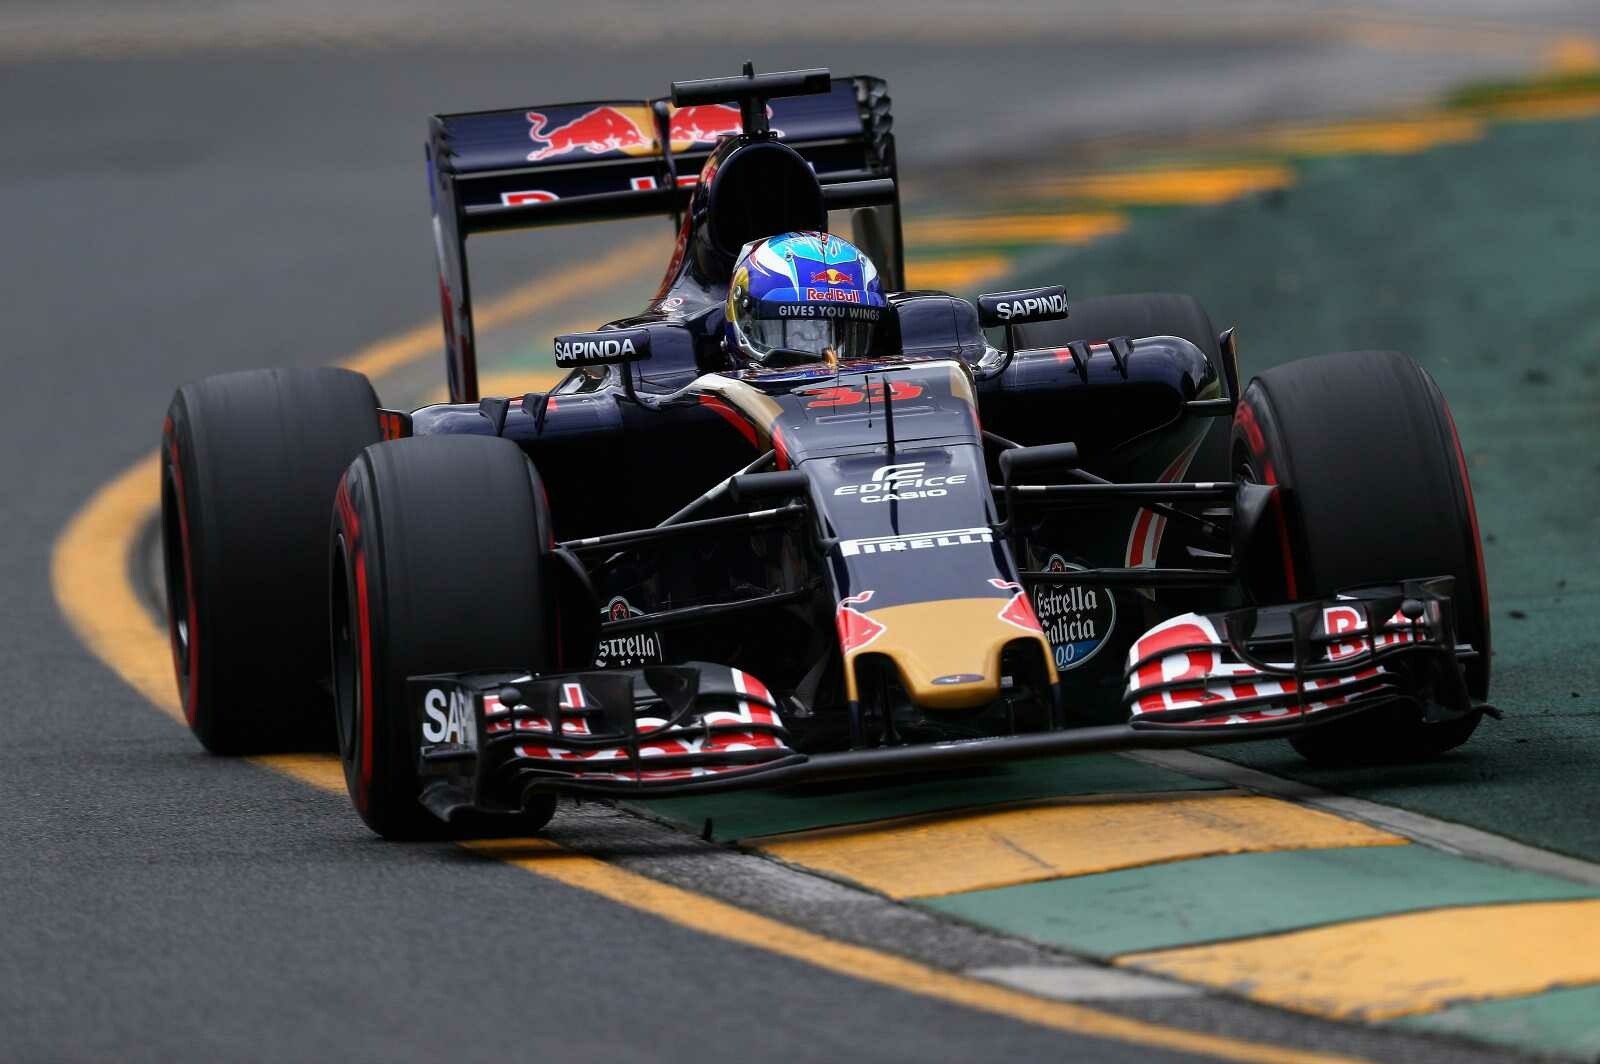 Max_Verstappen_Scuderia_Toro_Rosso_F1_GP_Australi